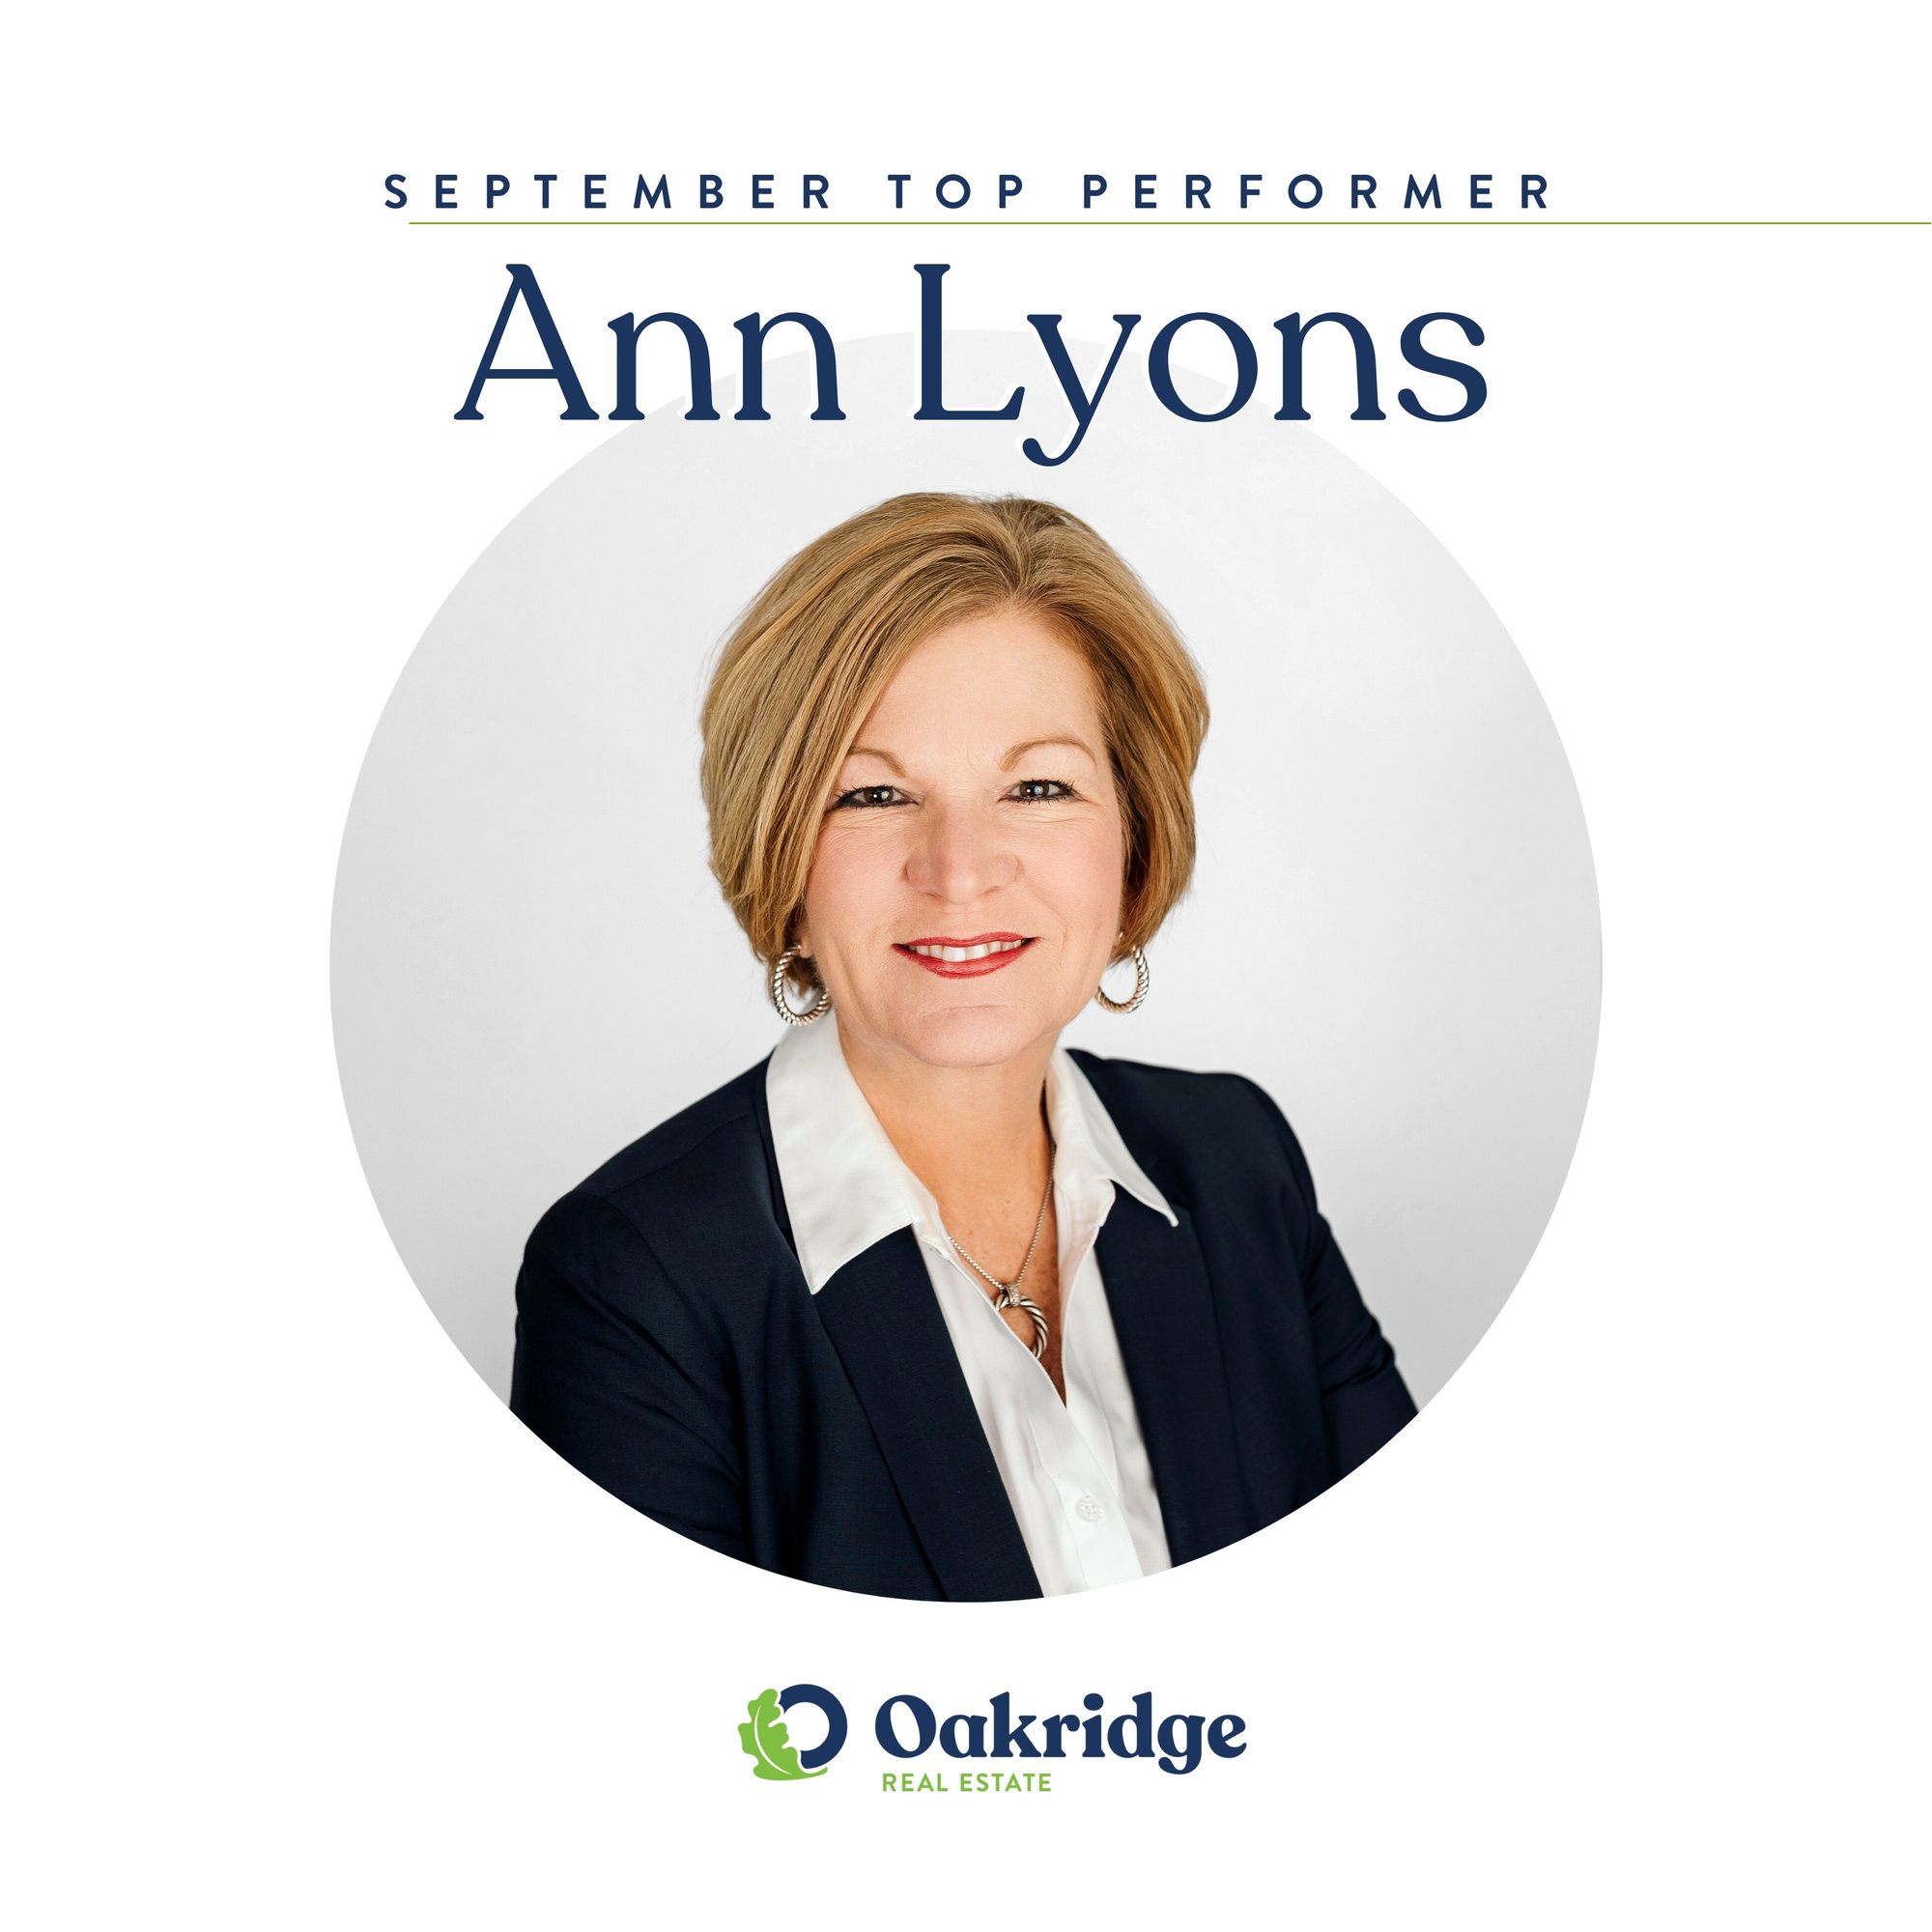 Ann Lyons September Top Performer | Oakridge Real Estate